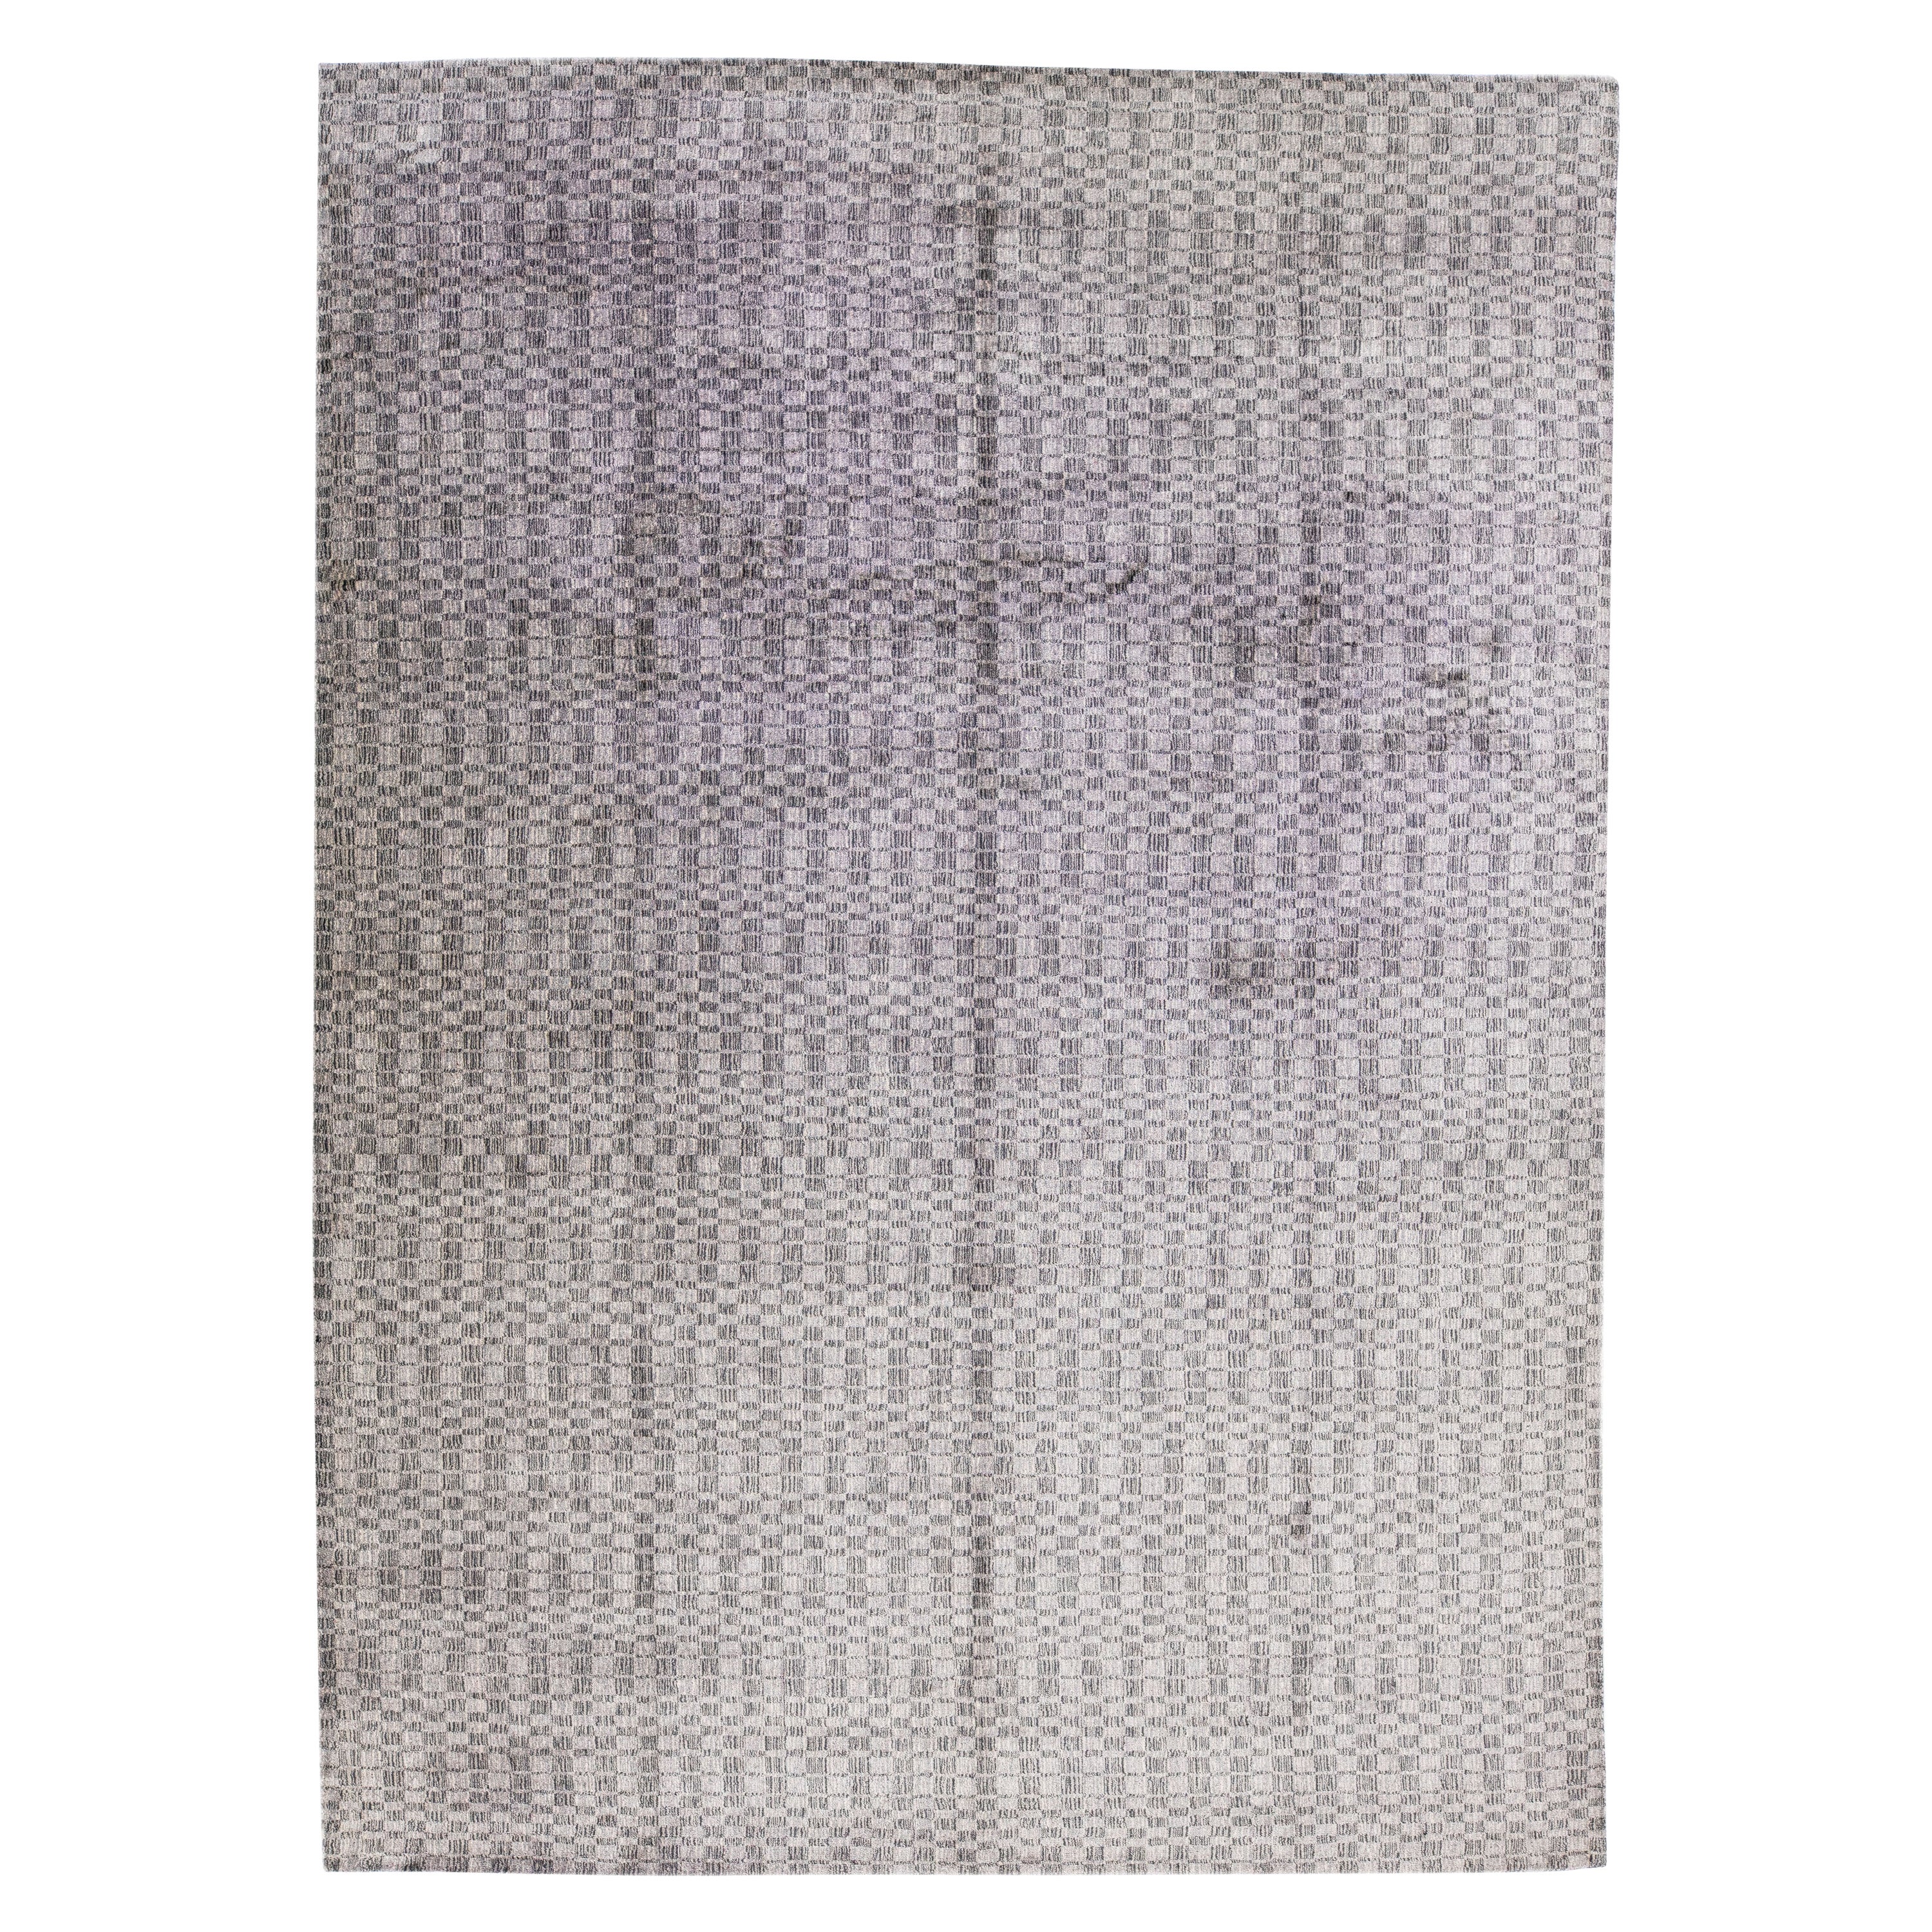 Handgefertigter Teppich aus Wolle und Seide mit grauem geometrischem Muster